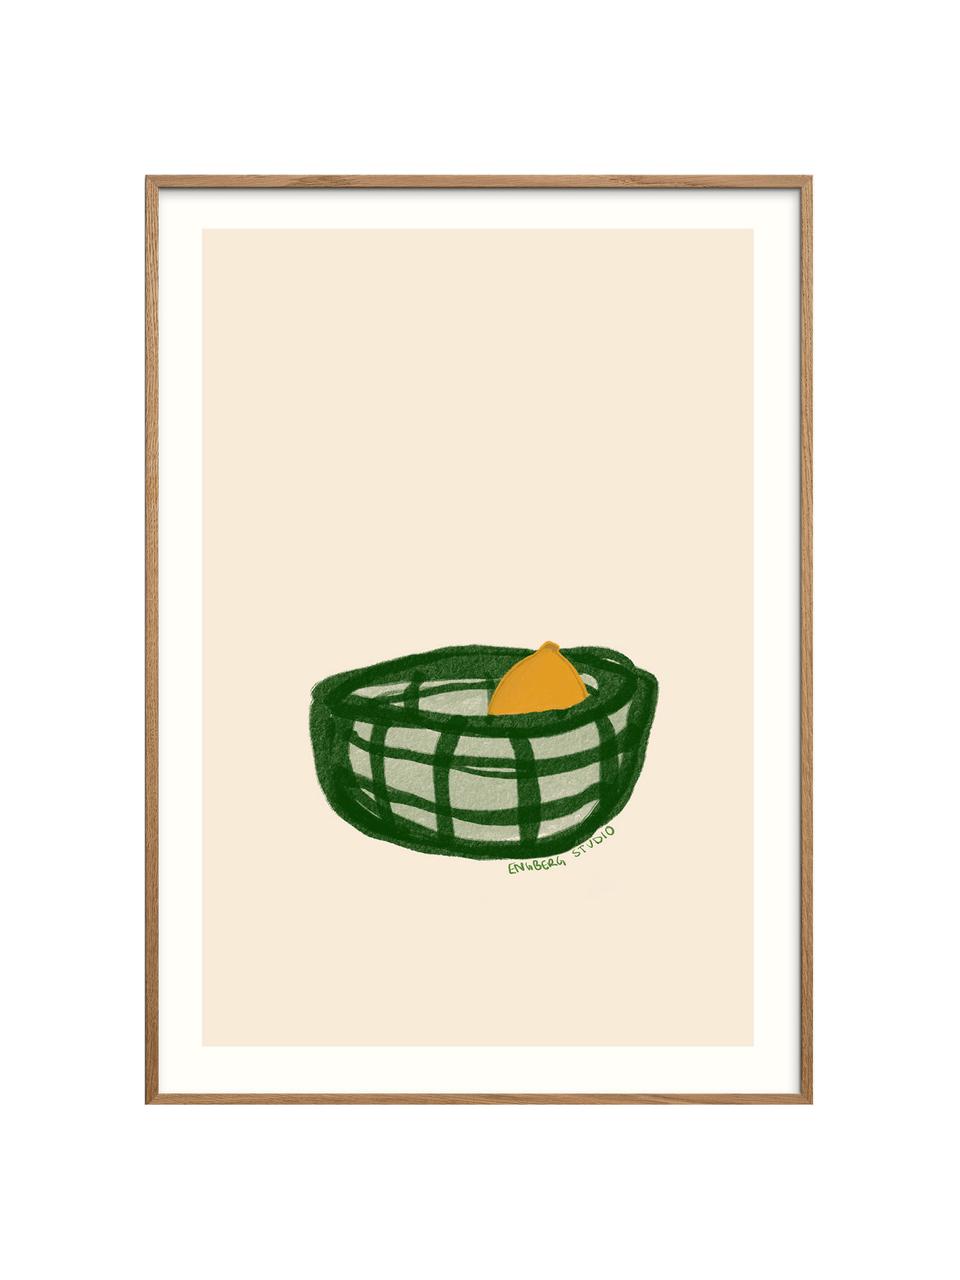 Póster A lemon in a basket, Beige claro, tonos verdes, amarillo sol, An 30 x Al 40 cm